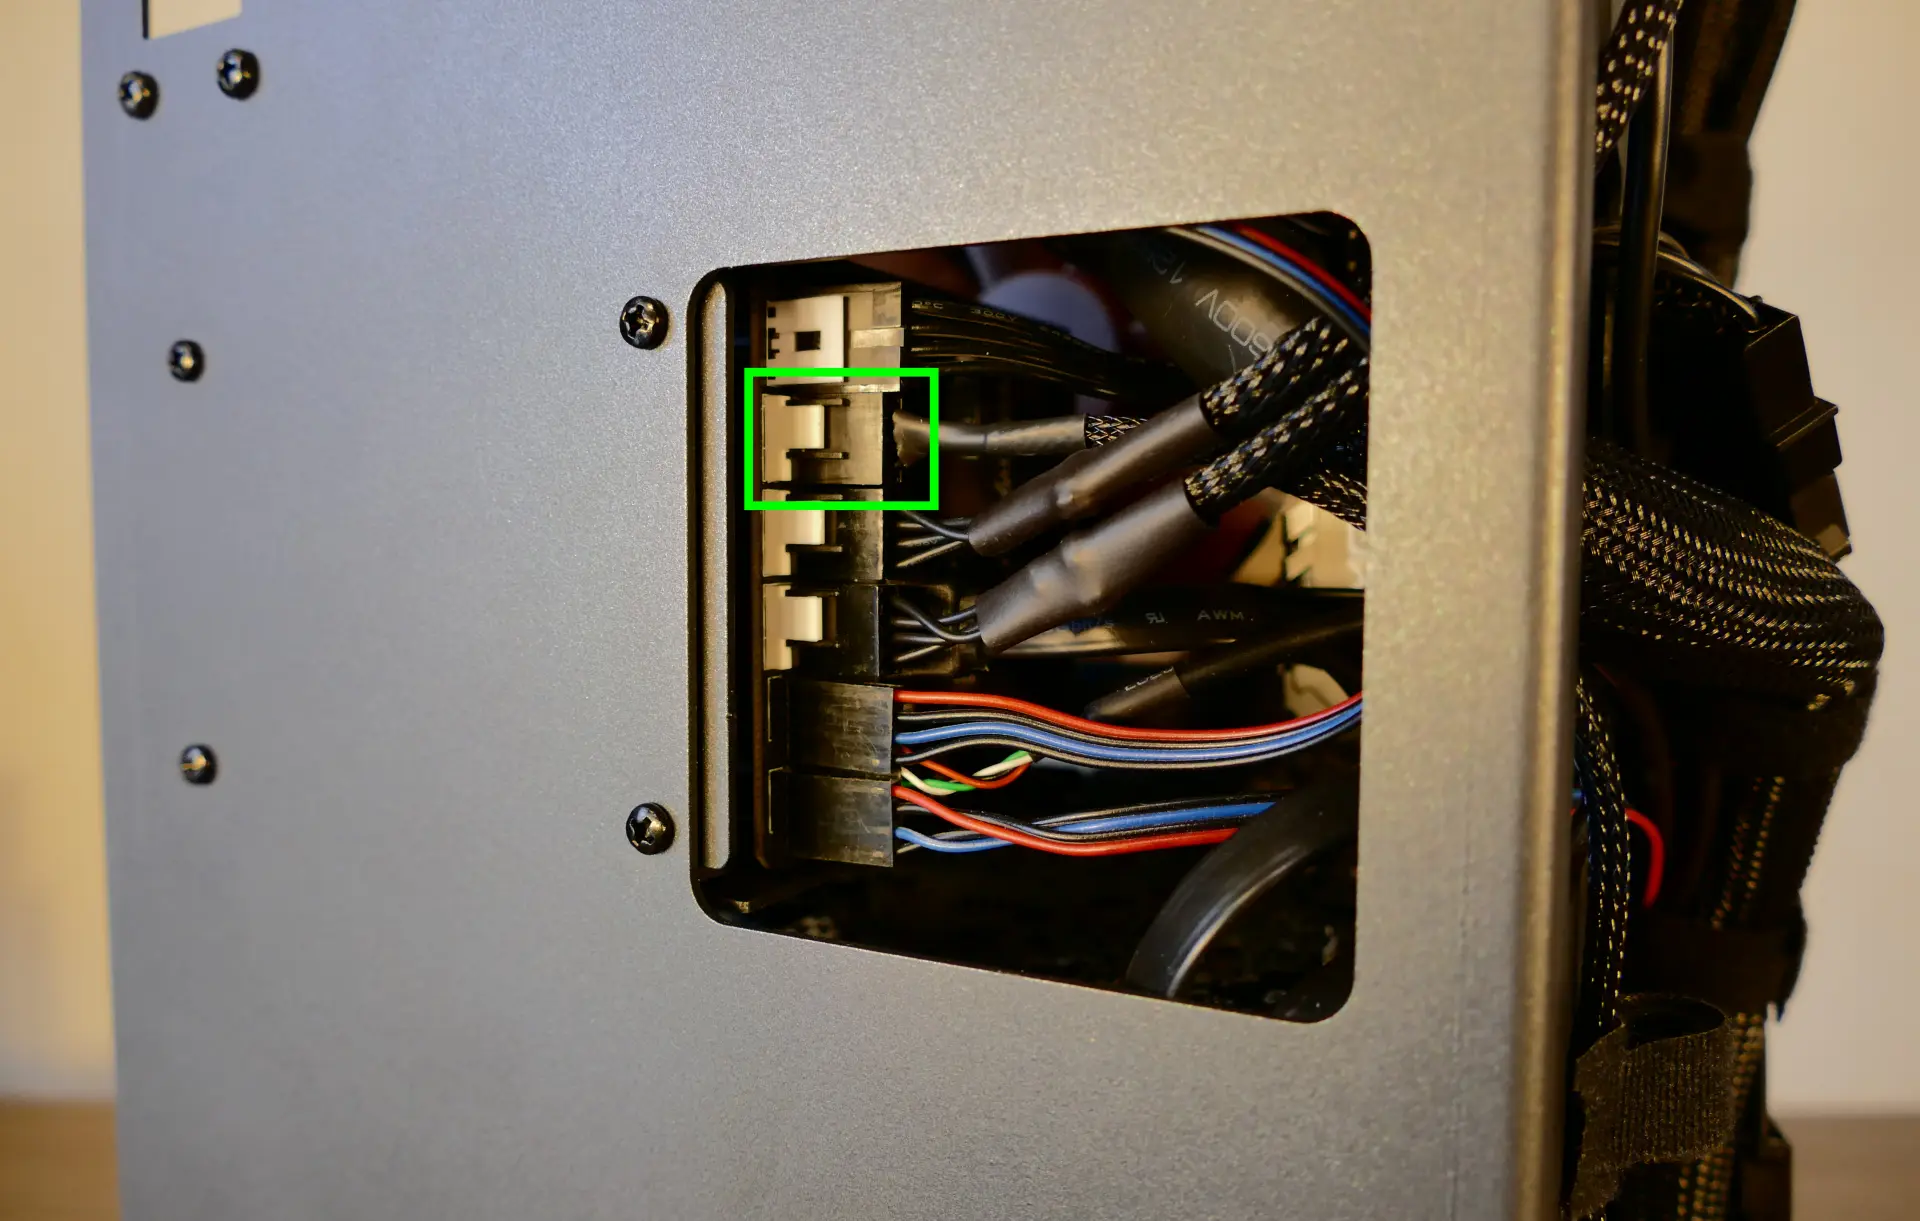 Bottom case fan connector